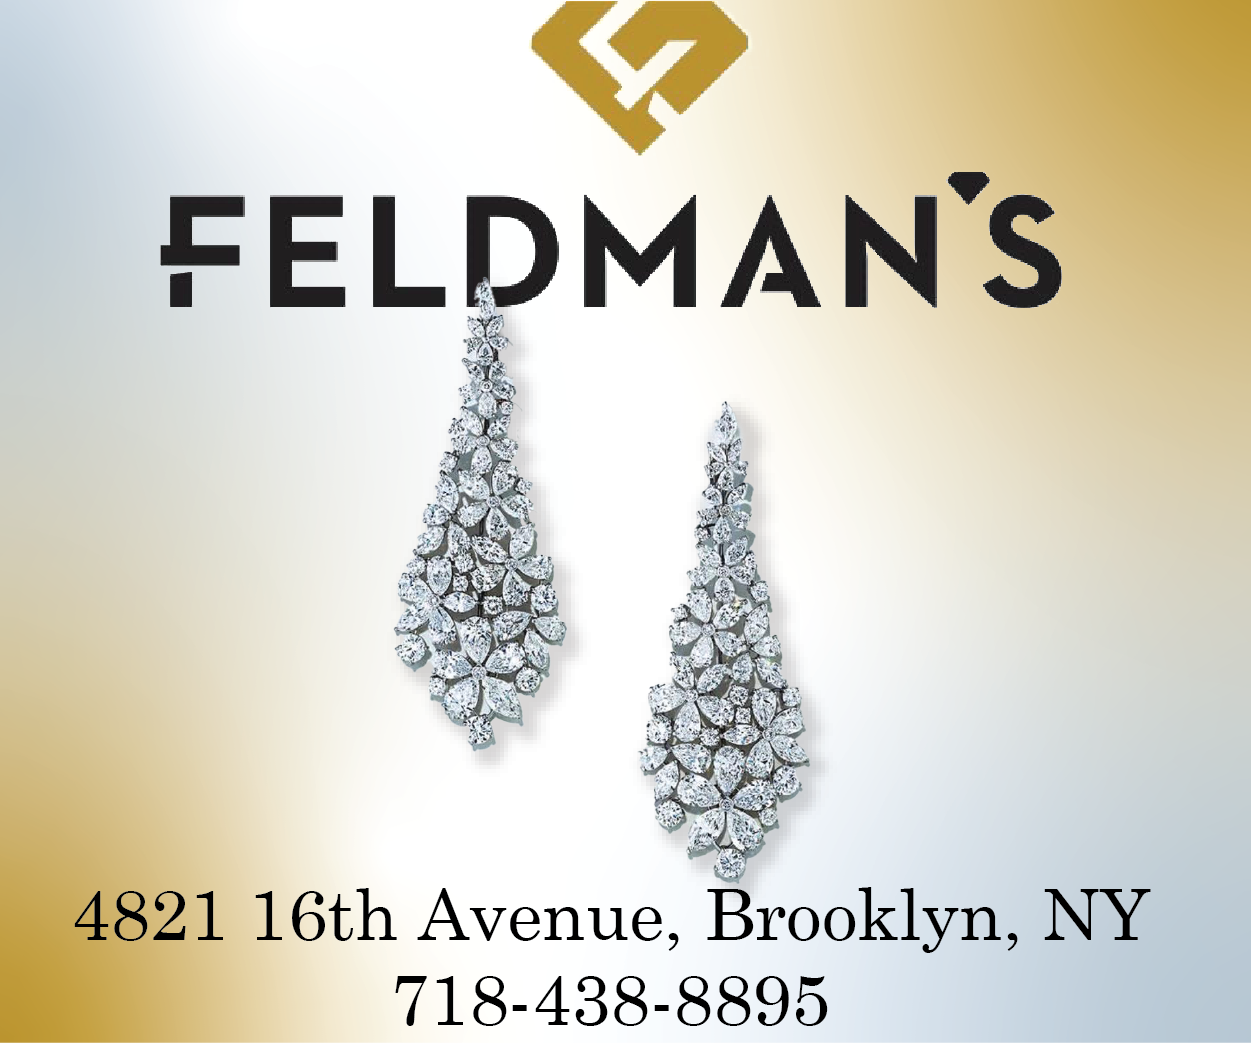 Feldman's Jewelers